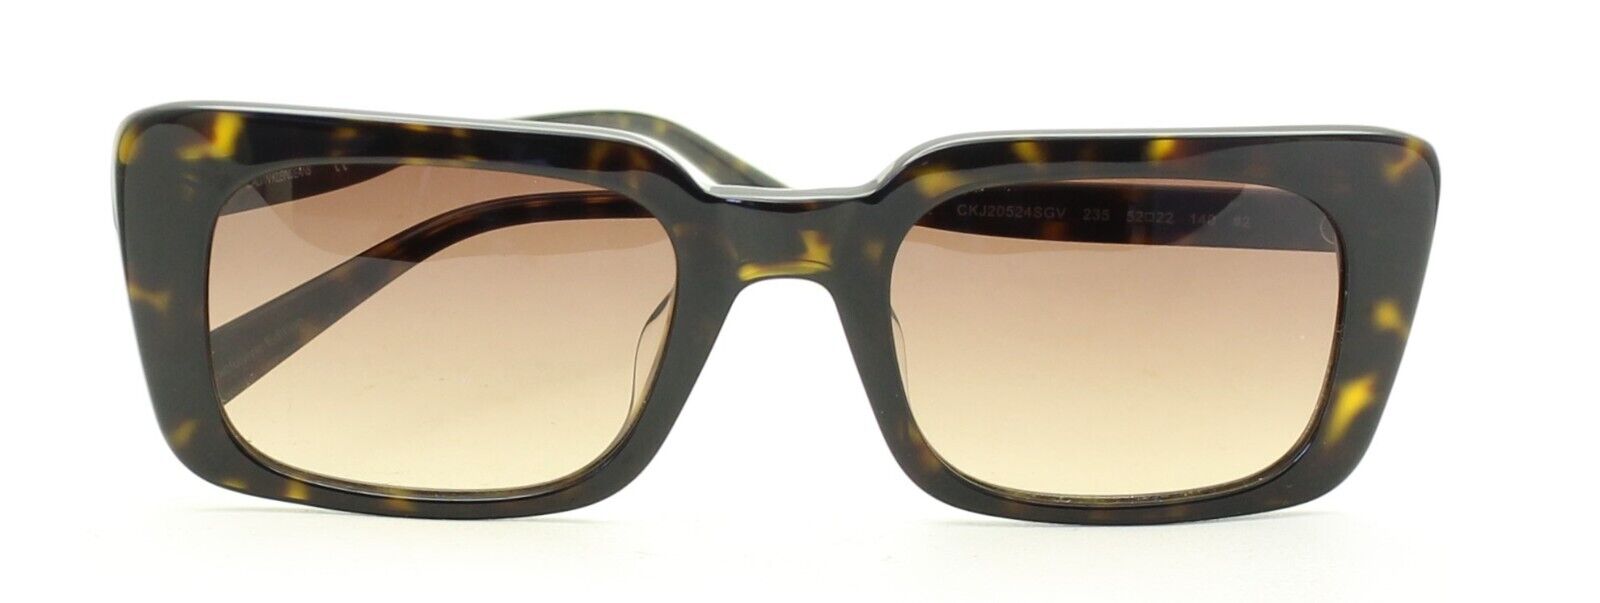 CALVIN KLEIN JEANS CKJ20524SGV 235 52mm Sunglasses Shades Frames New - BNIB